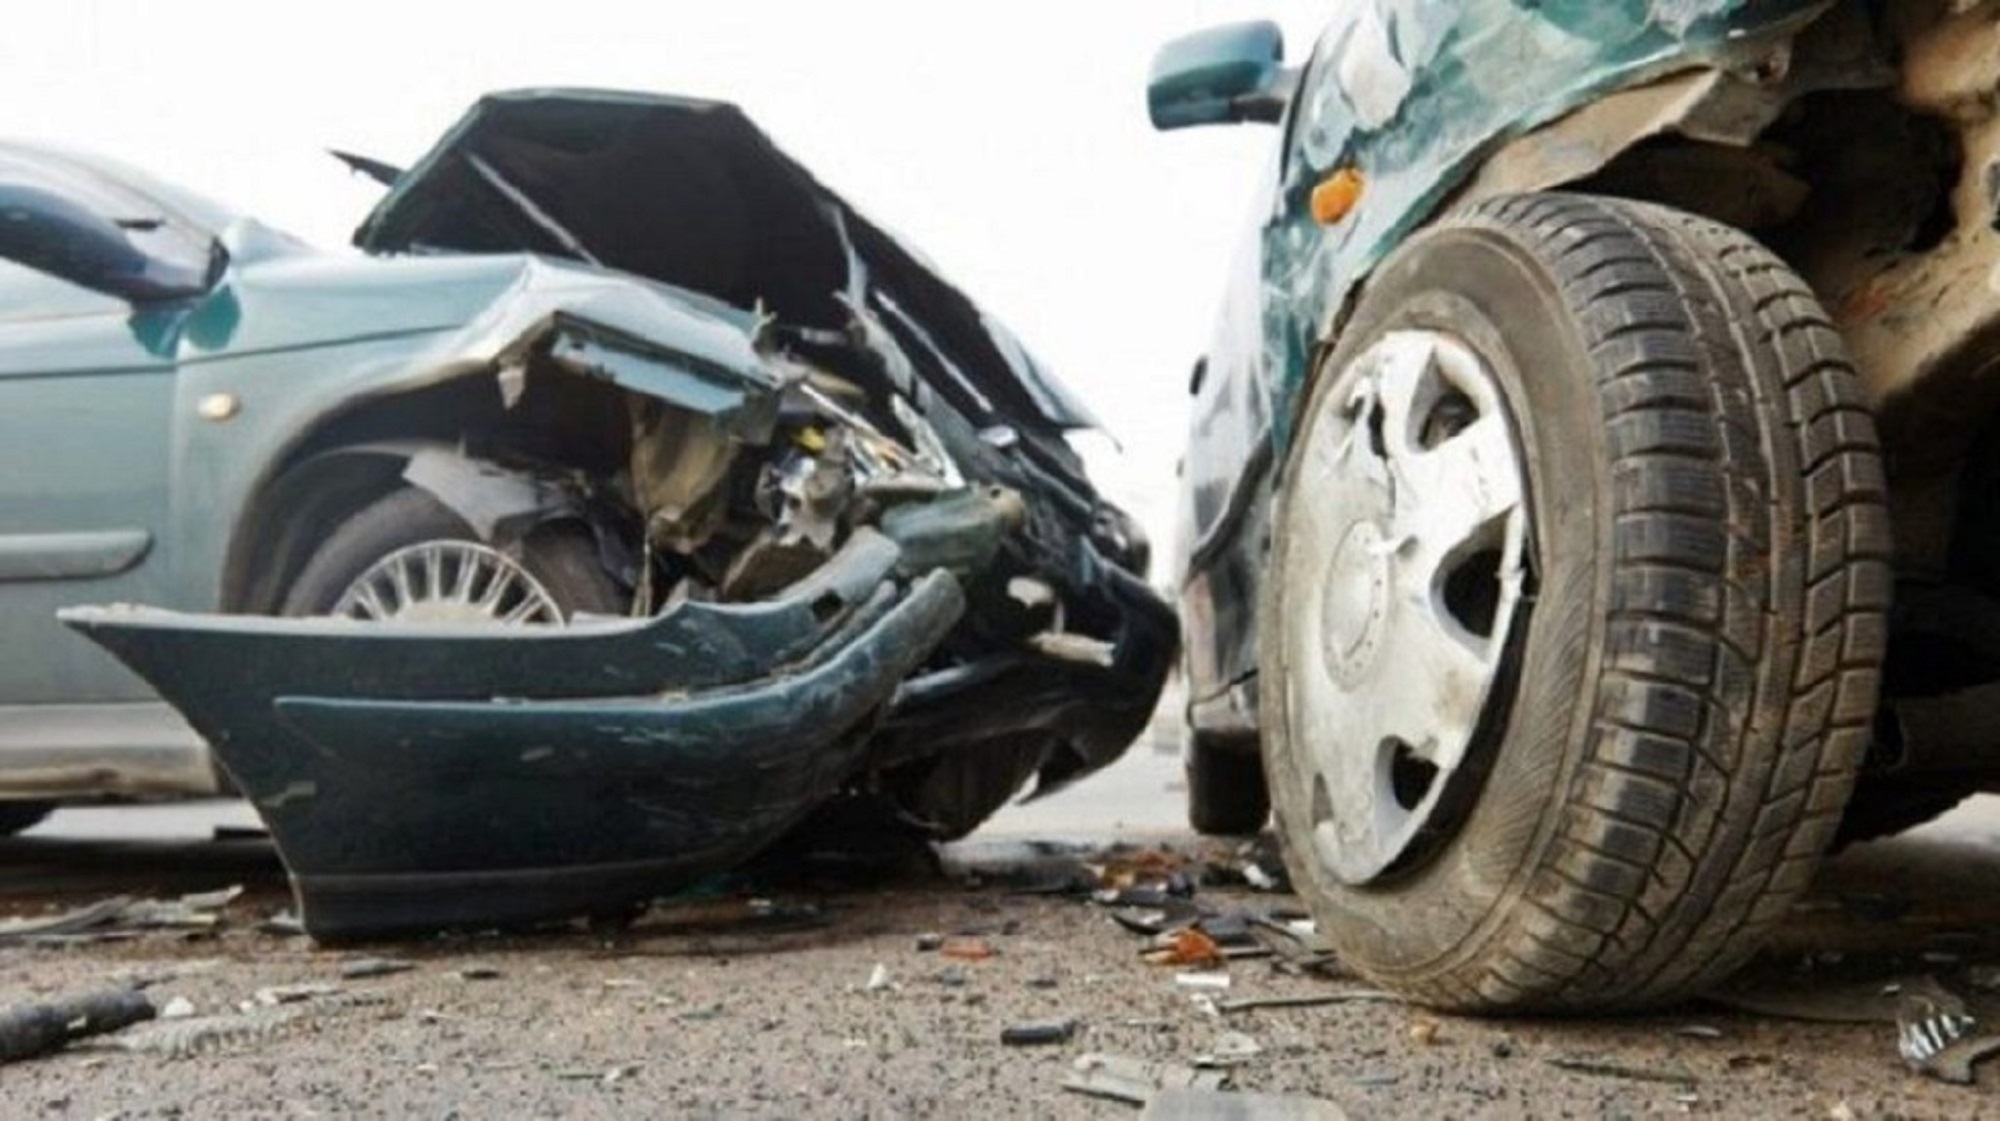 Ιωάννινα: Τροχαίο ατύχημα με επτά τραυματίες κοντά στο συνοριακό σταθμό της Κακαβιάς